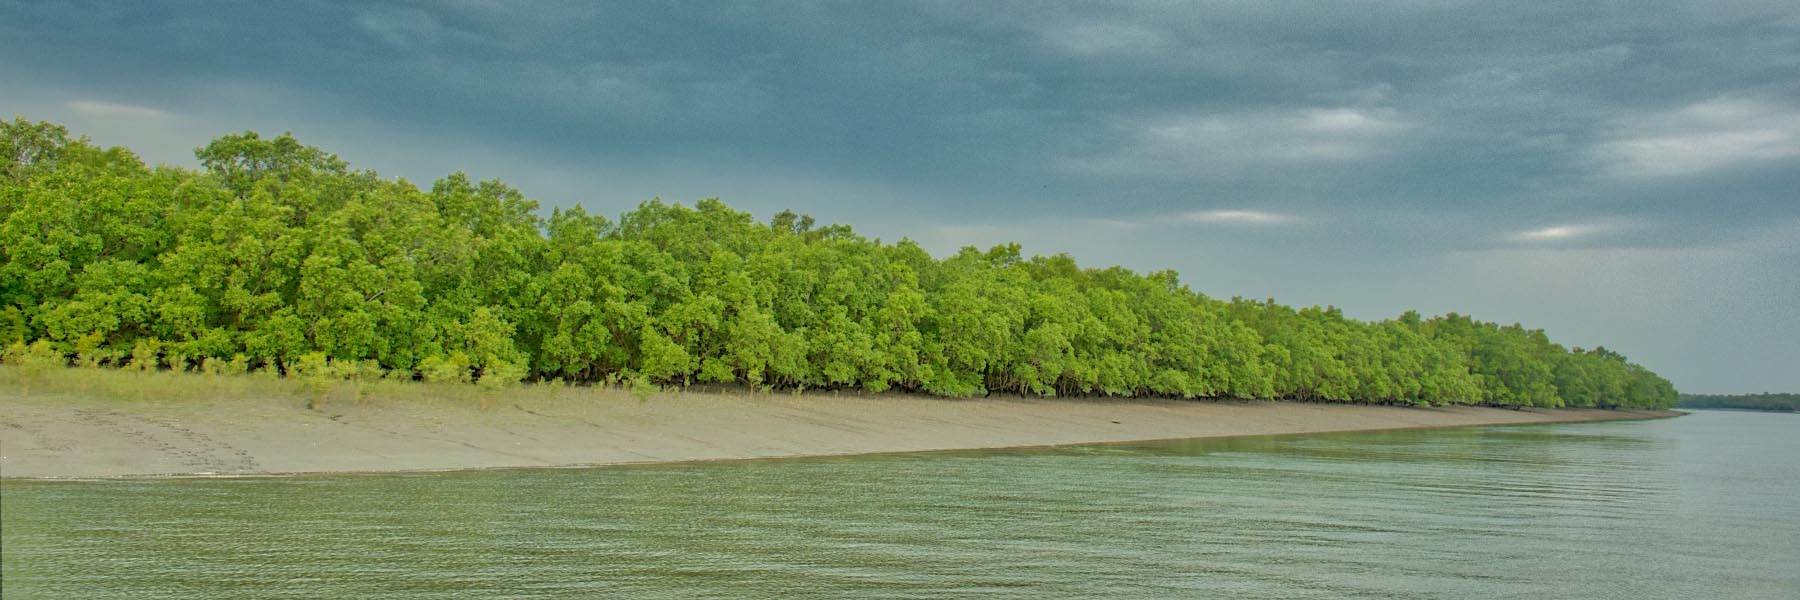 Sundarban National Park